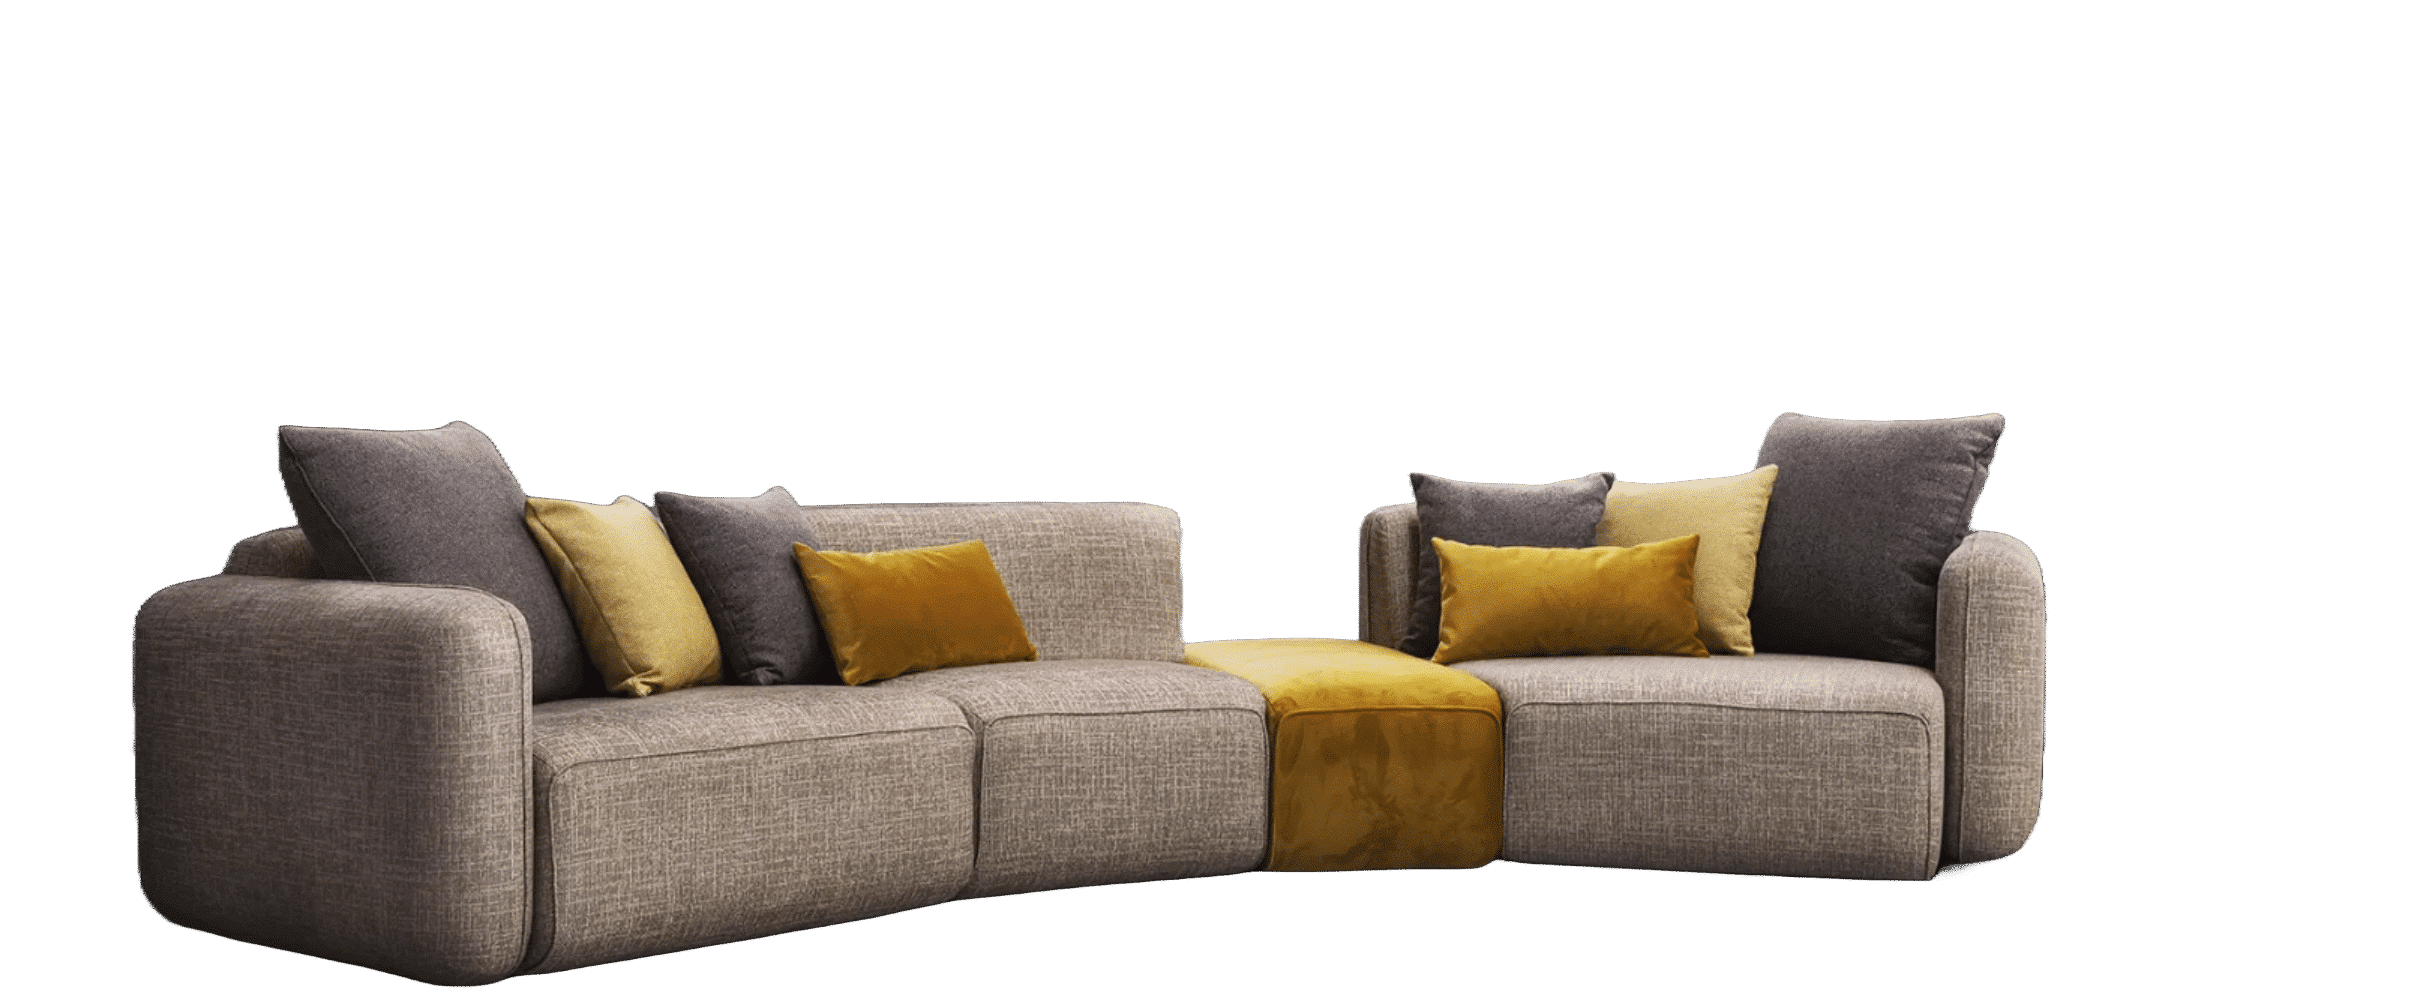 TACTIC este o canapea modulara care se remarca prin formele ovale, proportiile contemporane si designul modern